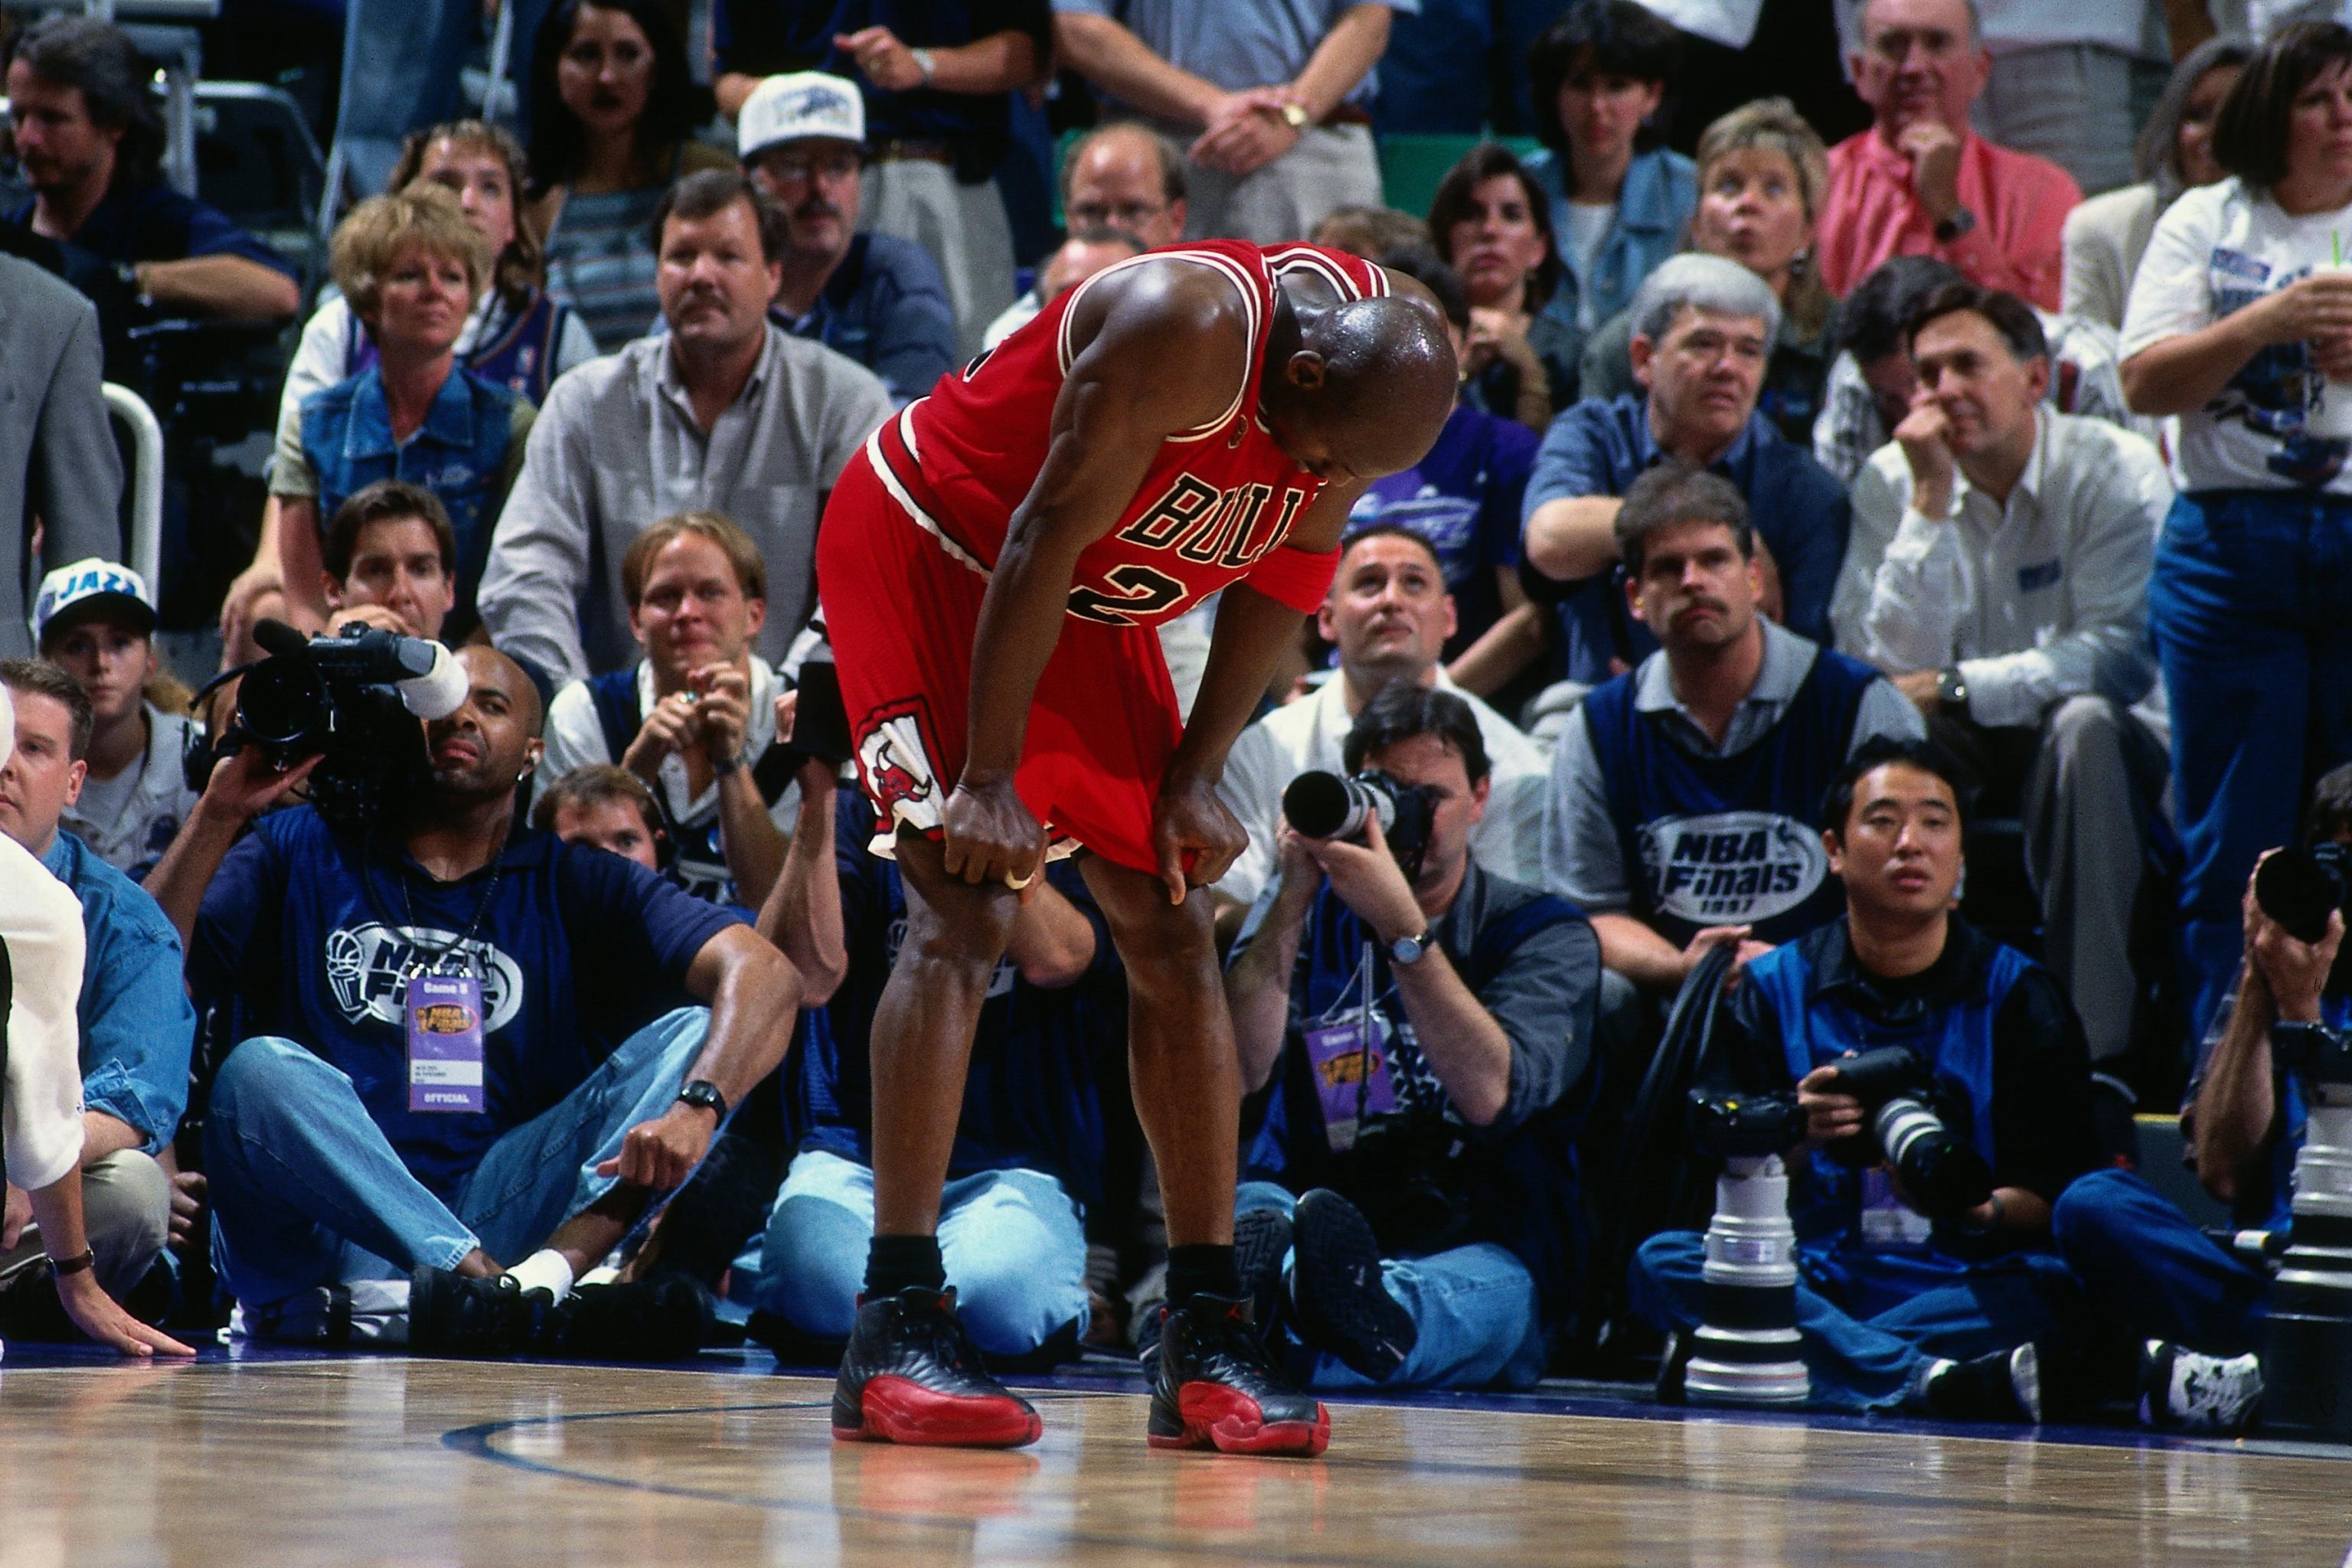 1997 Finals Game 1: Jordan at the Buzzer